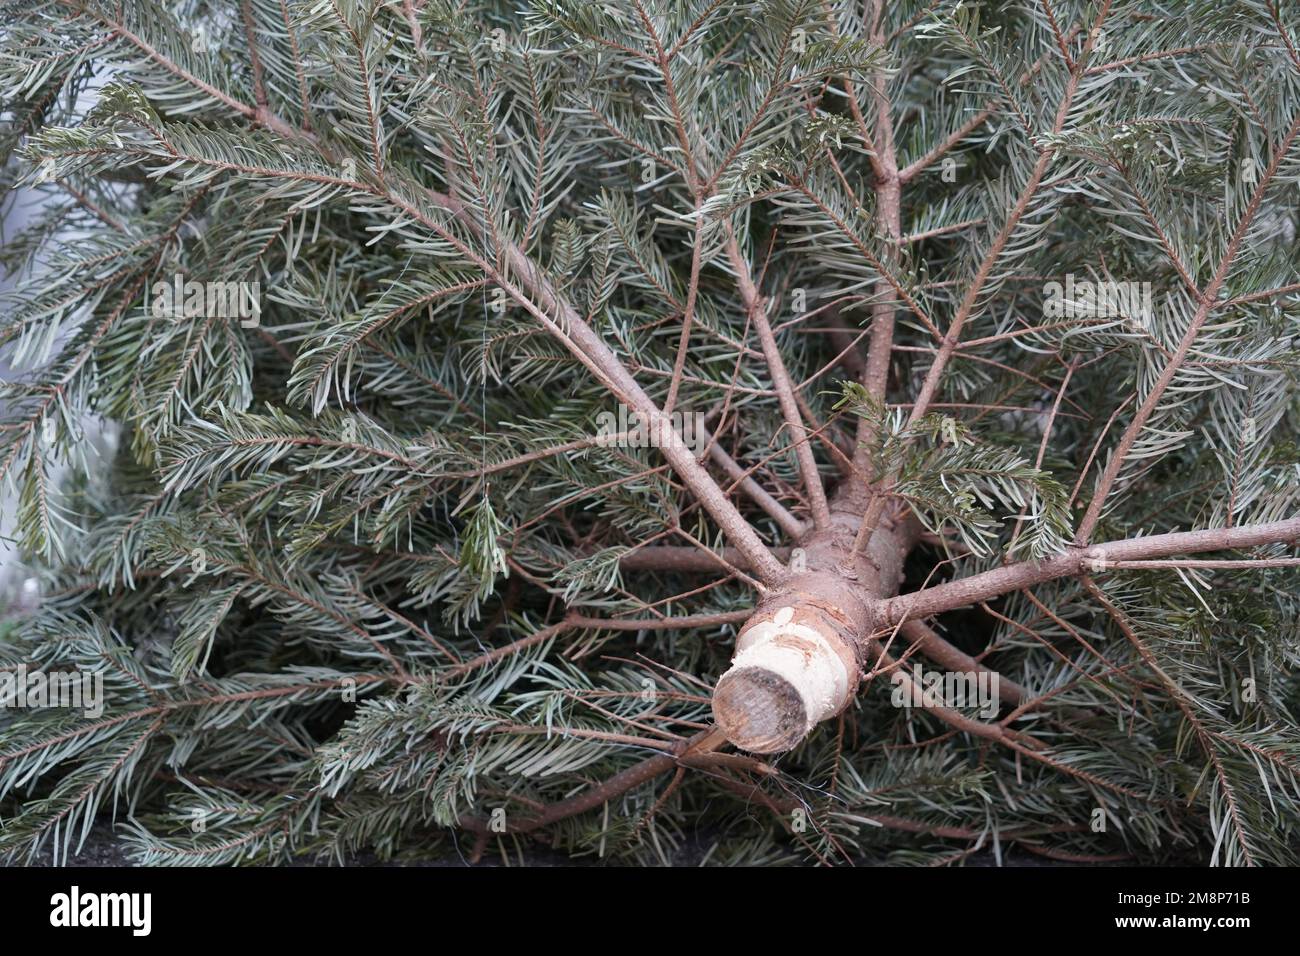 Arbre de Noël jeté lorsqu'il n'est plus nécessaire. Concentrez-vous sur la partie inférieure de l'arbre, sur le tronc sans écorce. Banque D'Images